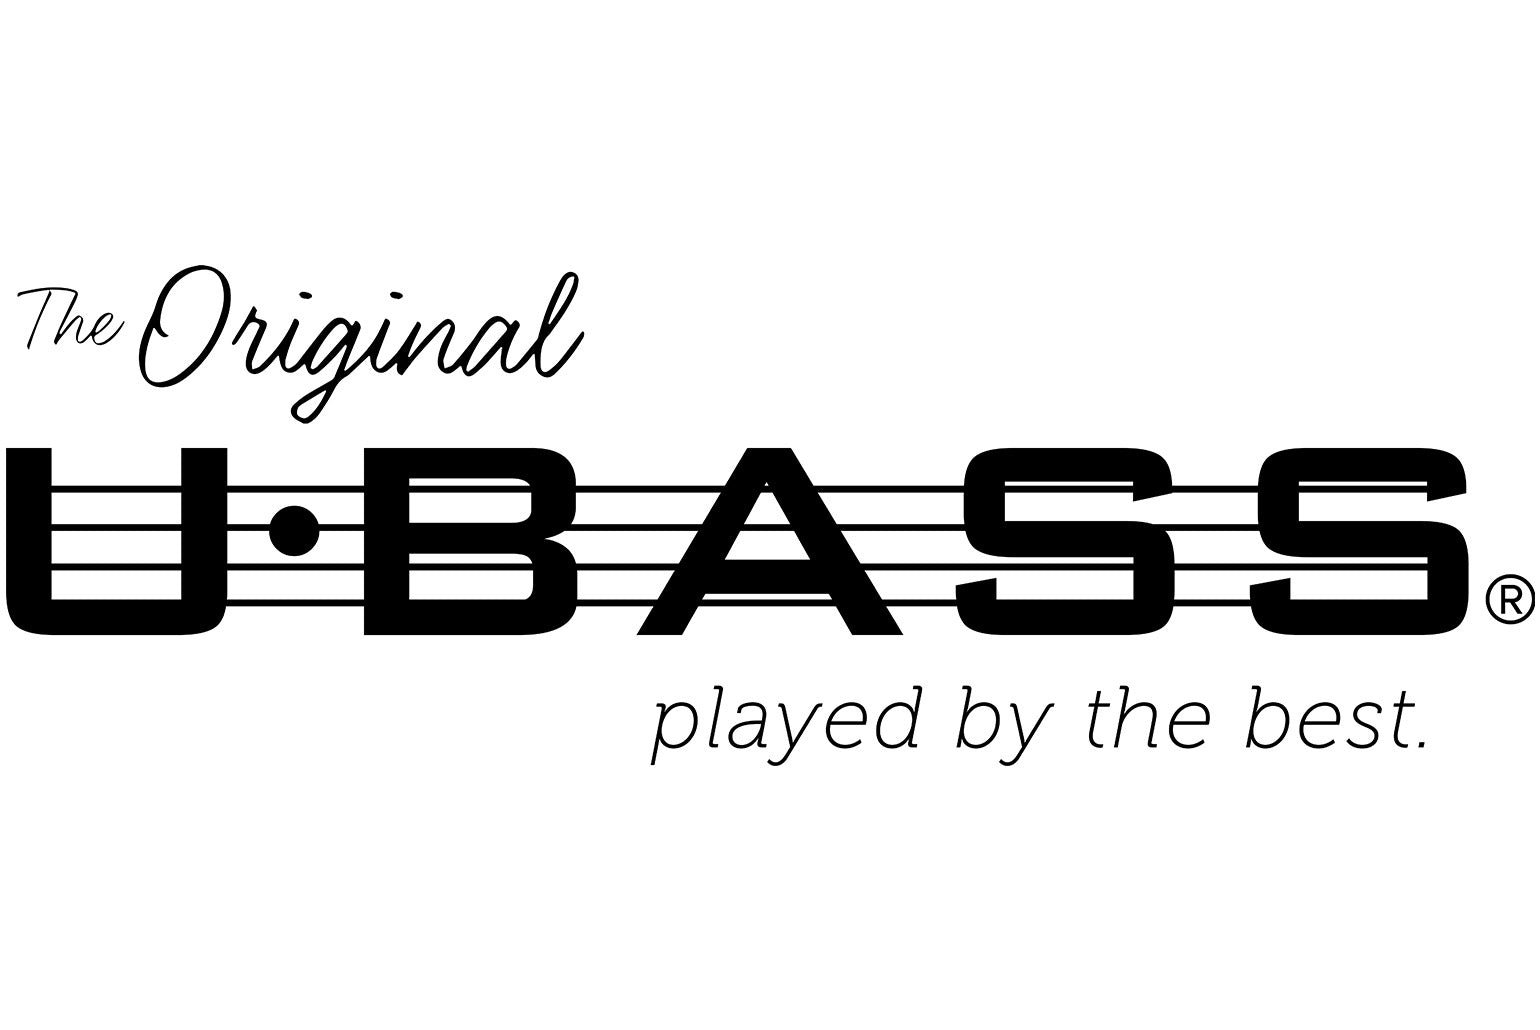 Bass Drum Logo Sticker, Black | Drum Workshop Inc.